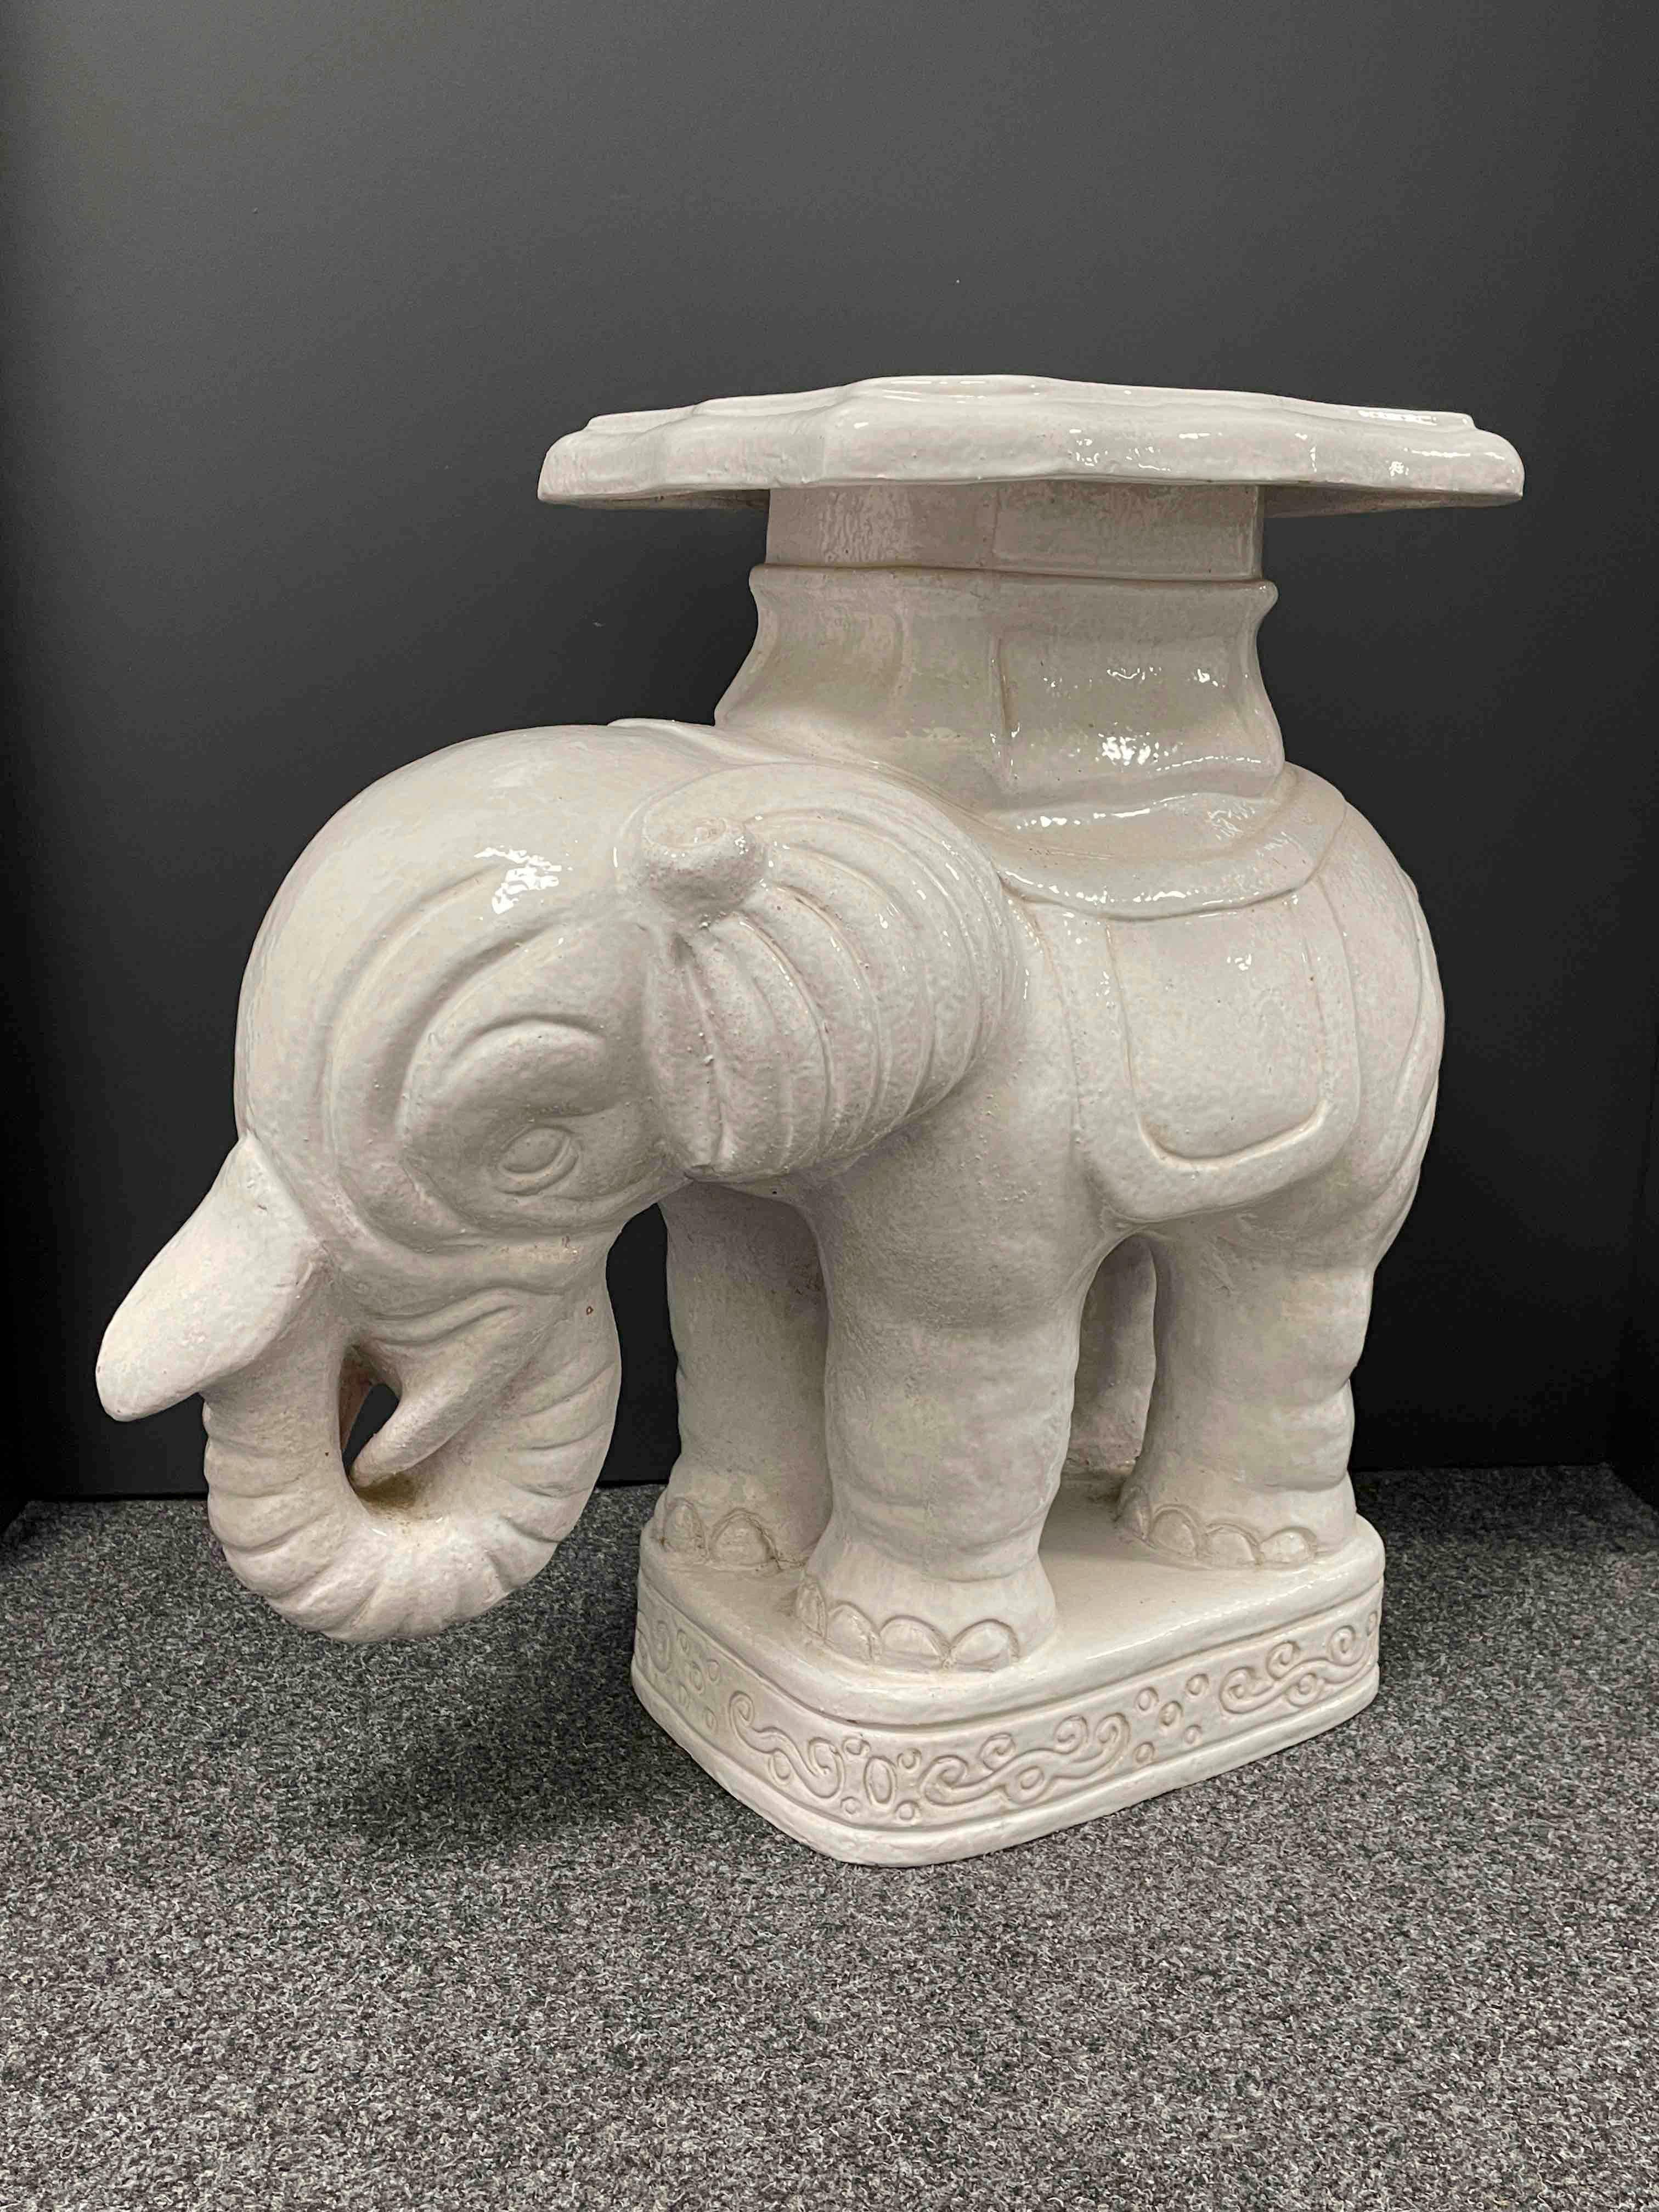 Ein Paar glasierte Keramik Elefant Garten Hocker, Blumentopf Sitz oder Beistelltische Mitte des 20. Handgefertigt aus Keramik / Steingut / Majolika. Eine schöne Ergänzung für Ihr Haus, Ihre Terrasse oder Ihren Garten. Eine schöne Ergänzung für jedes